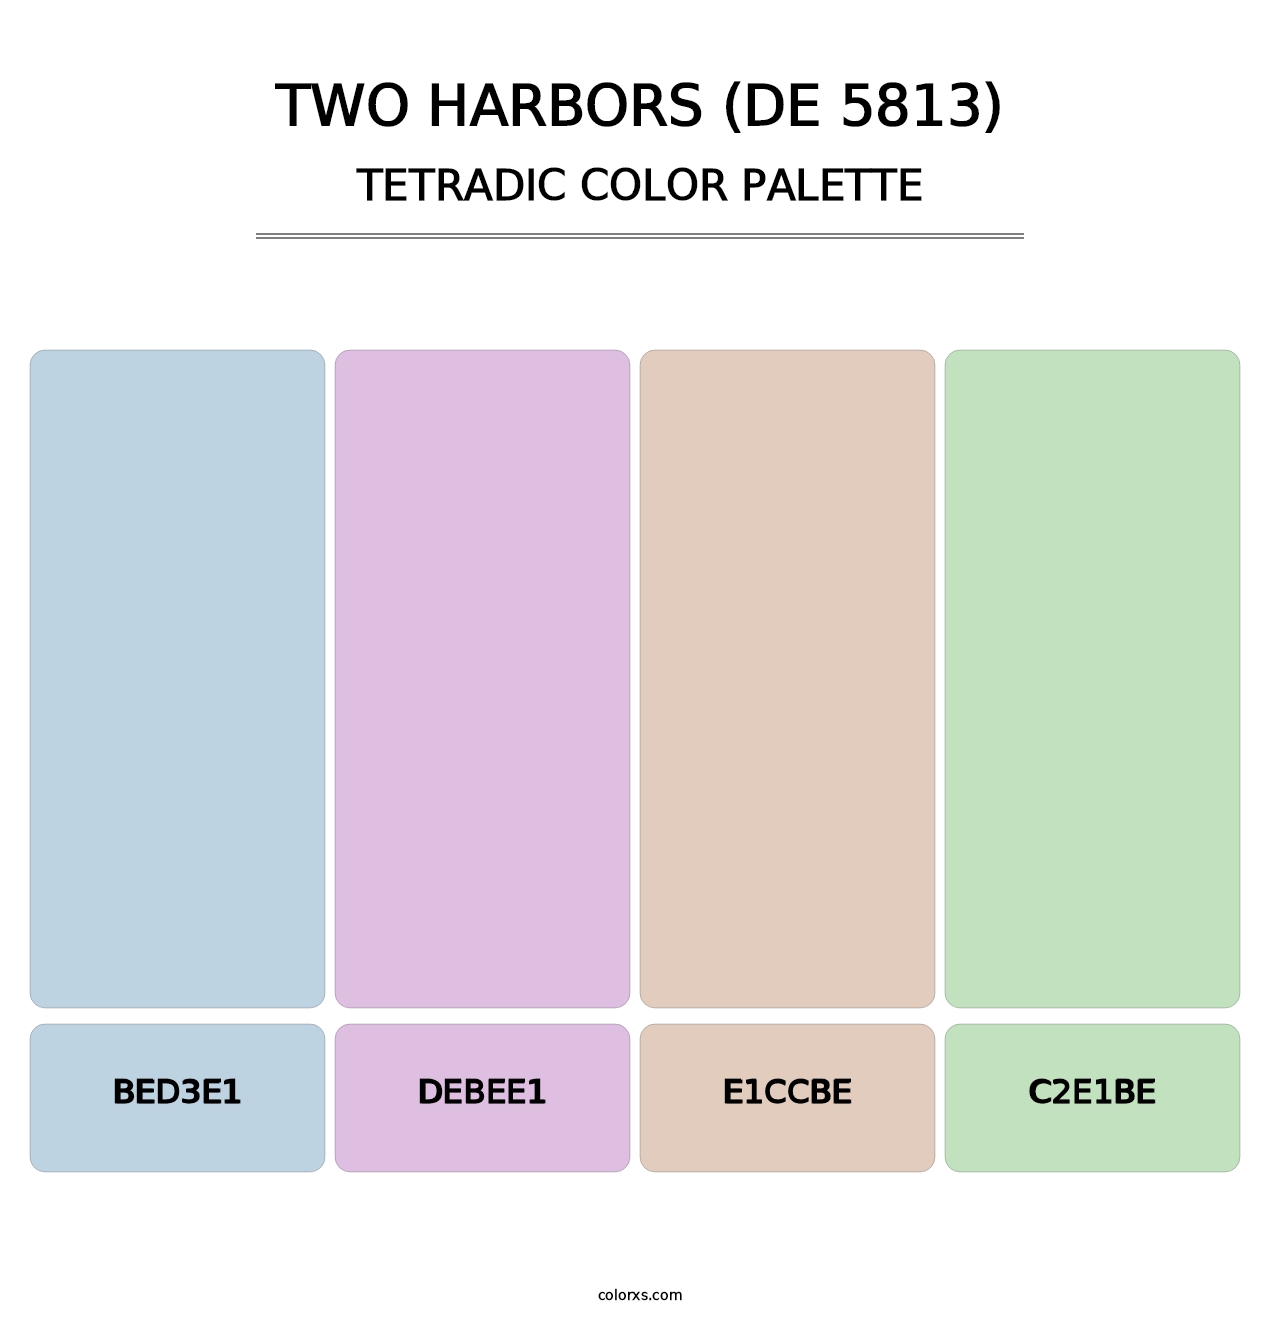 Two Harbors (DE 5813) - Tetradic Color Palette